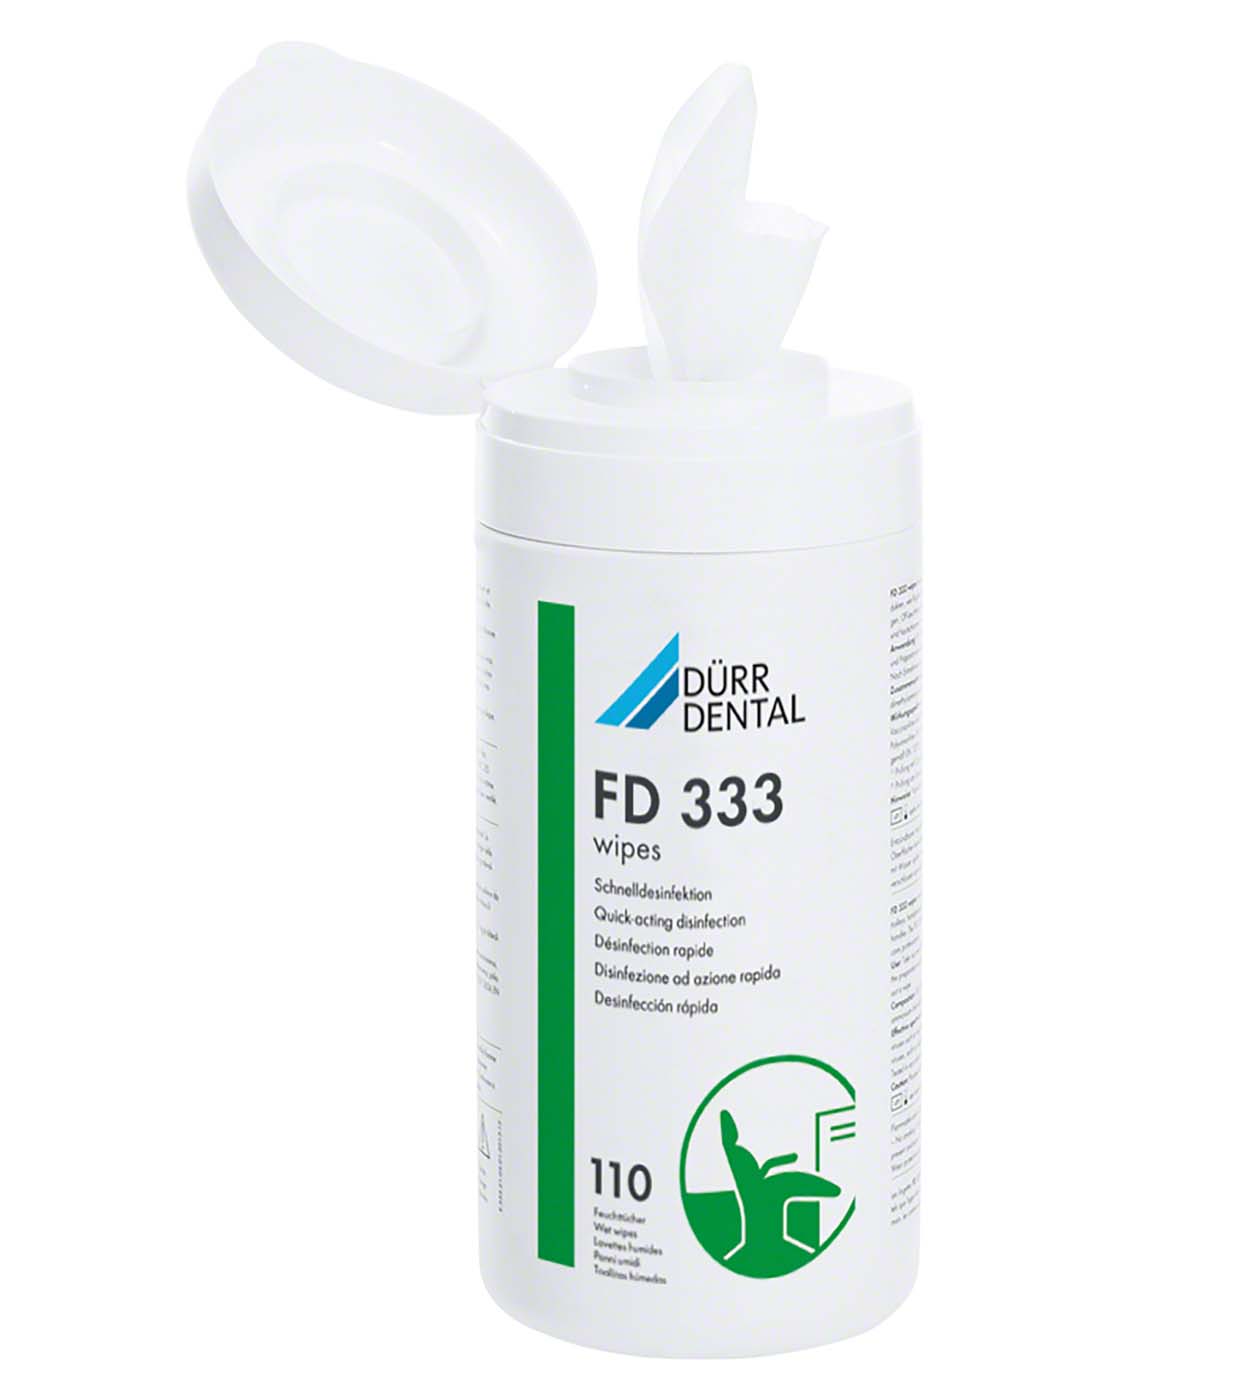 FD 333 wipes Flächen-Desinfektion Dürr Dental